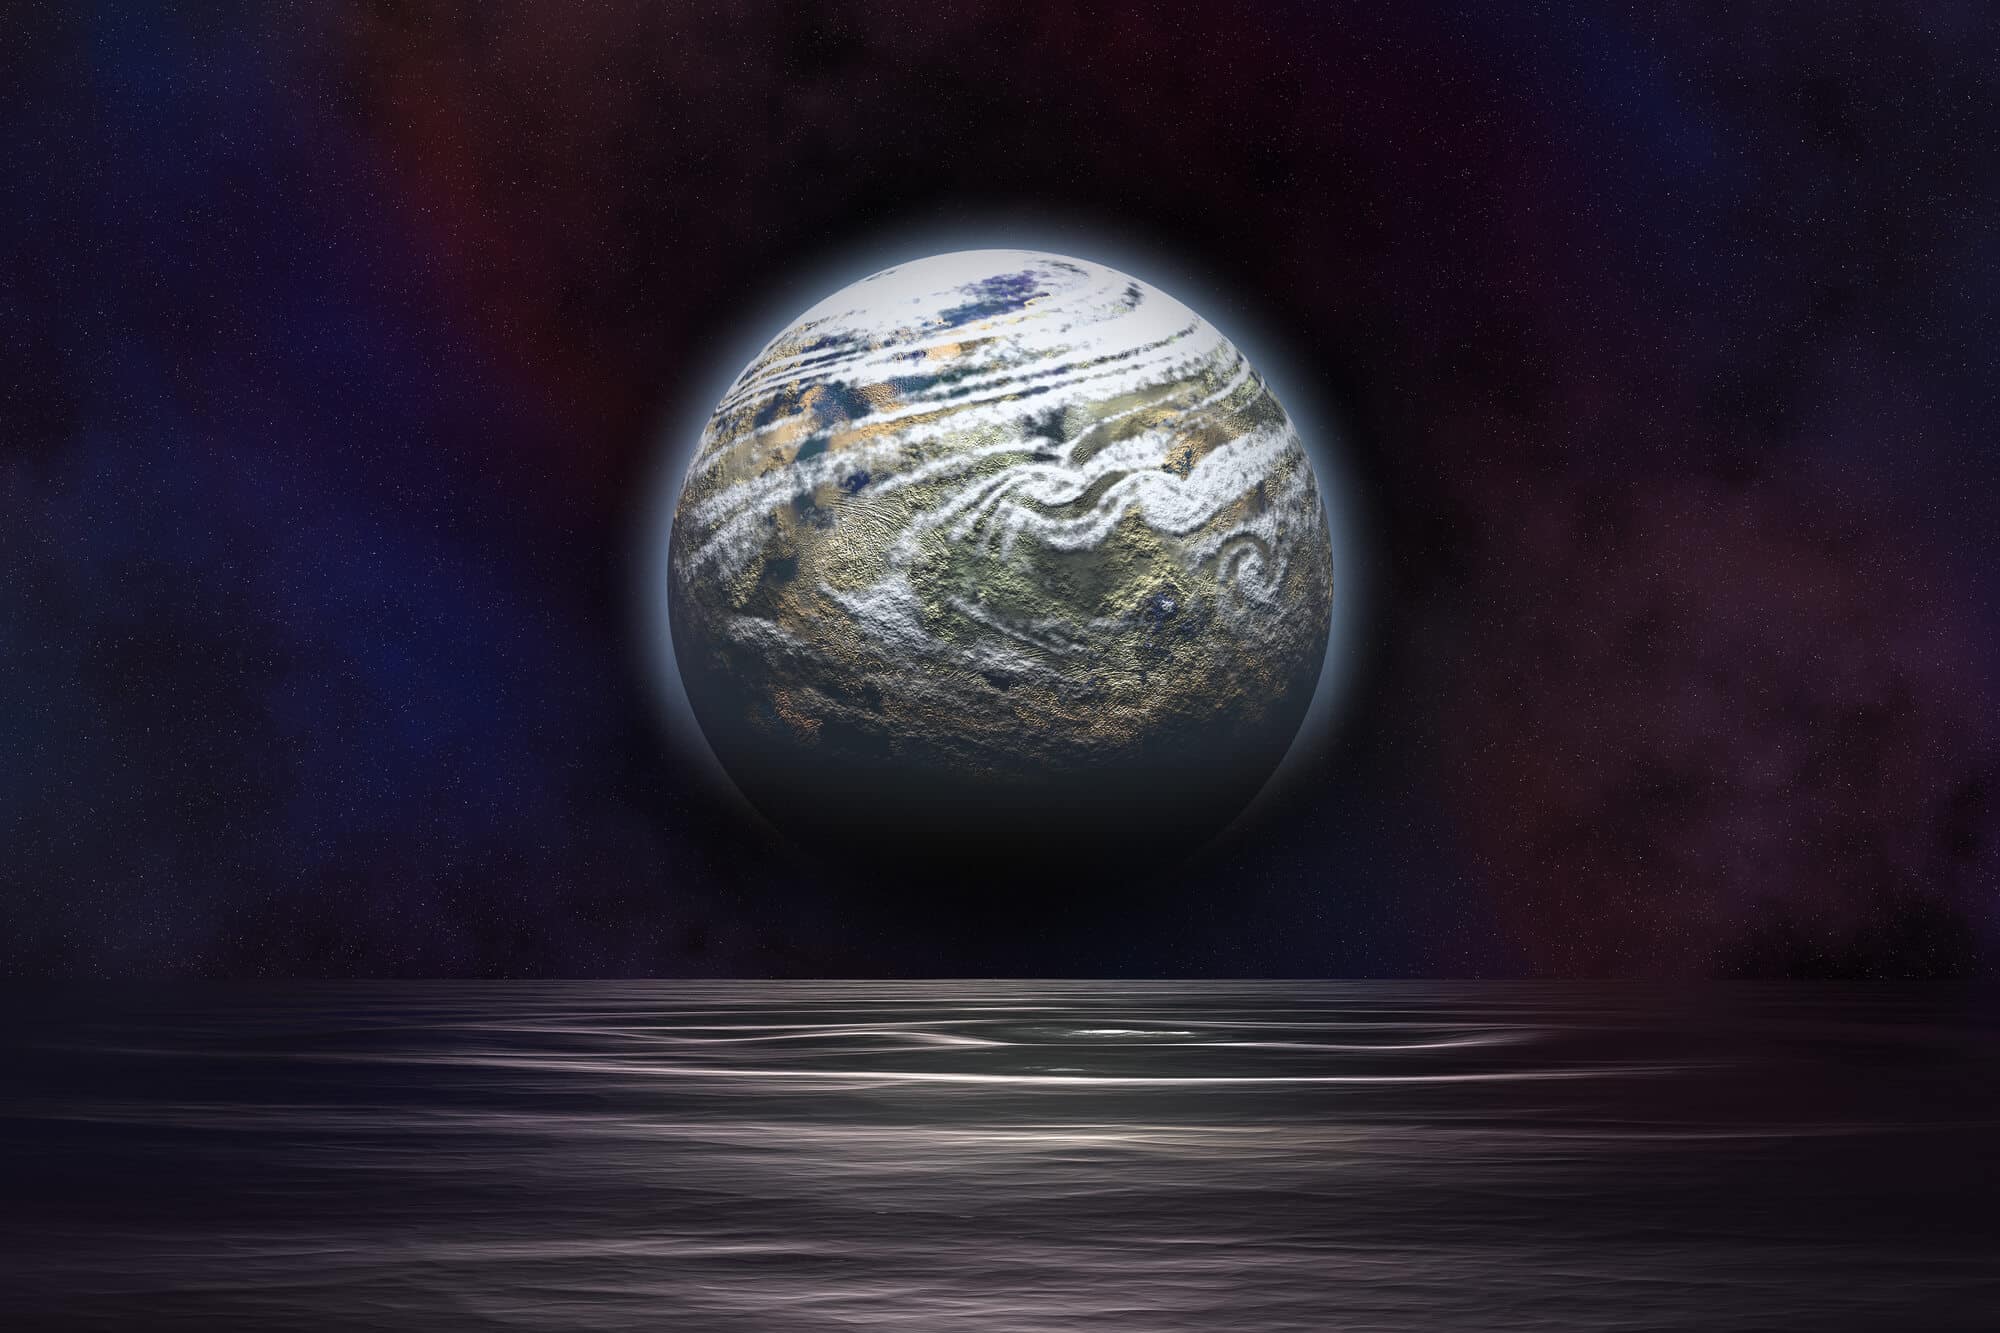 كوكب في منطقة الحياة أو المنطقة الذهبية - حيث يمكن أن يتواجد الماء في حالة سائلة. الرسم التوضيحي: موقع Depositphotos.com 